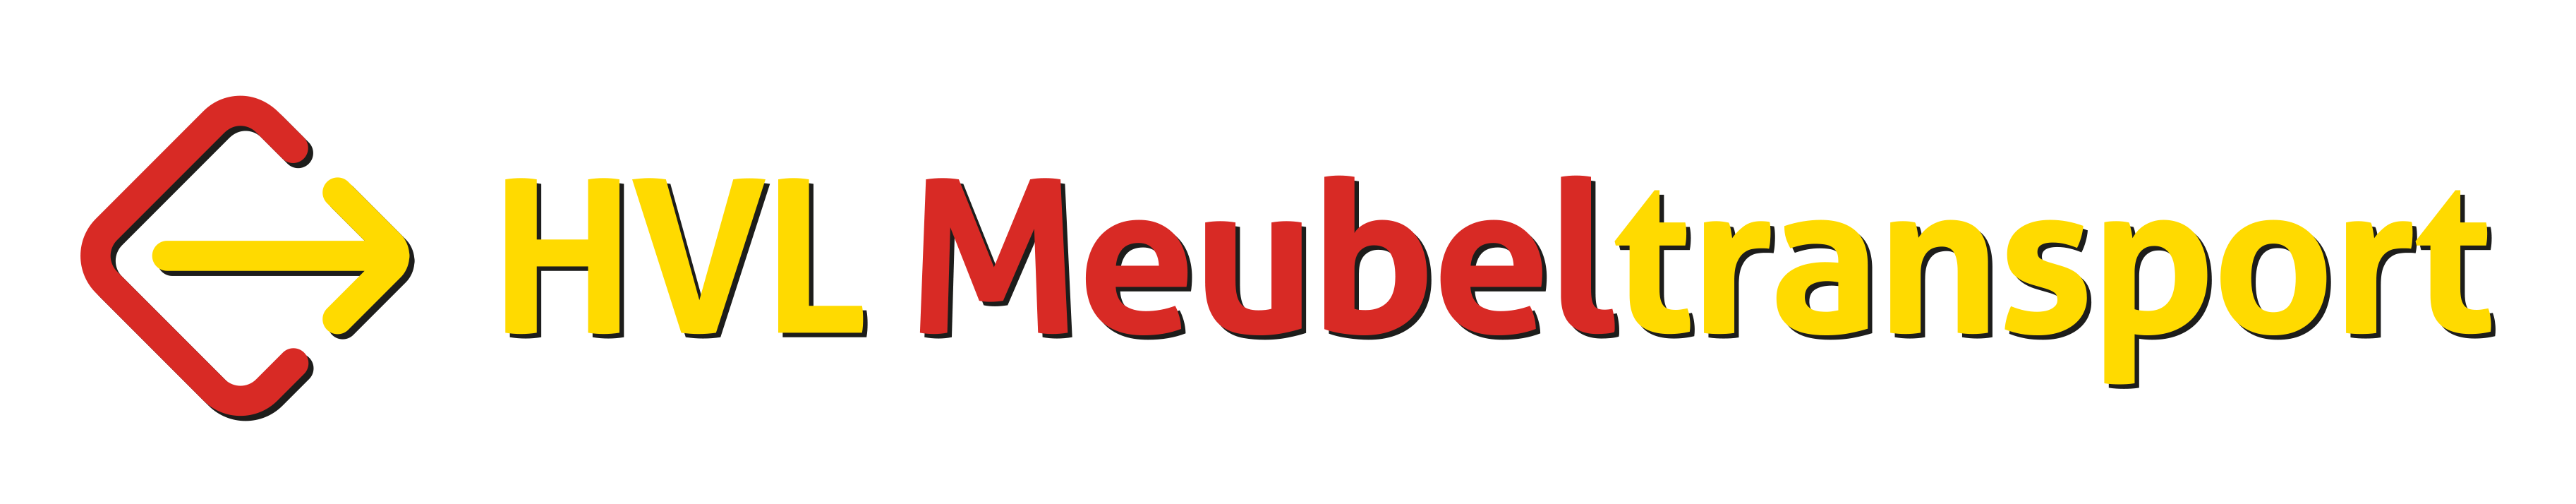 HVL Meubeltransport Logo